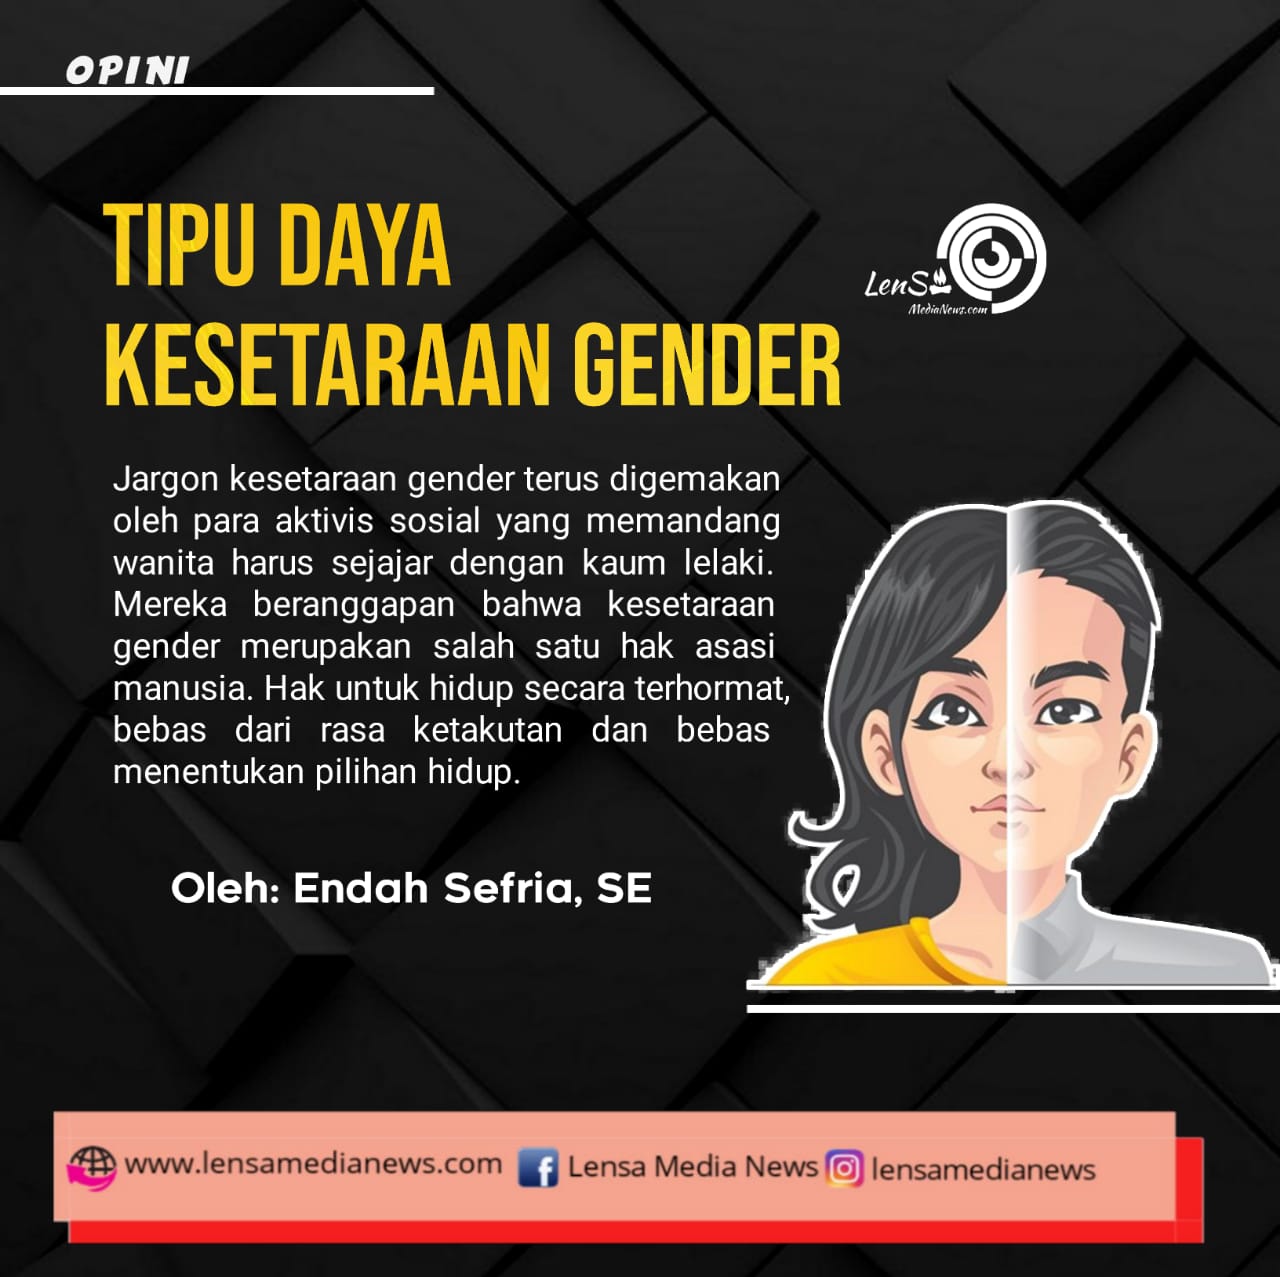 Tipu Daya Kesetaraan Gender - LenSa MediaNews